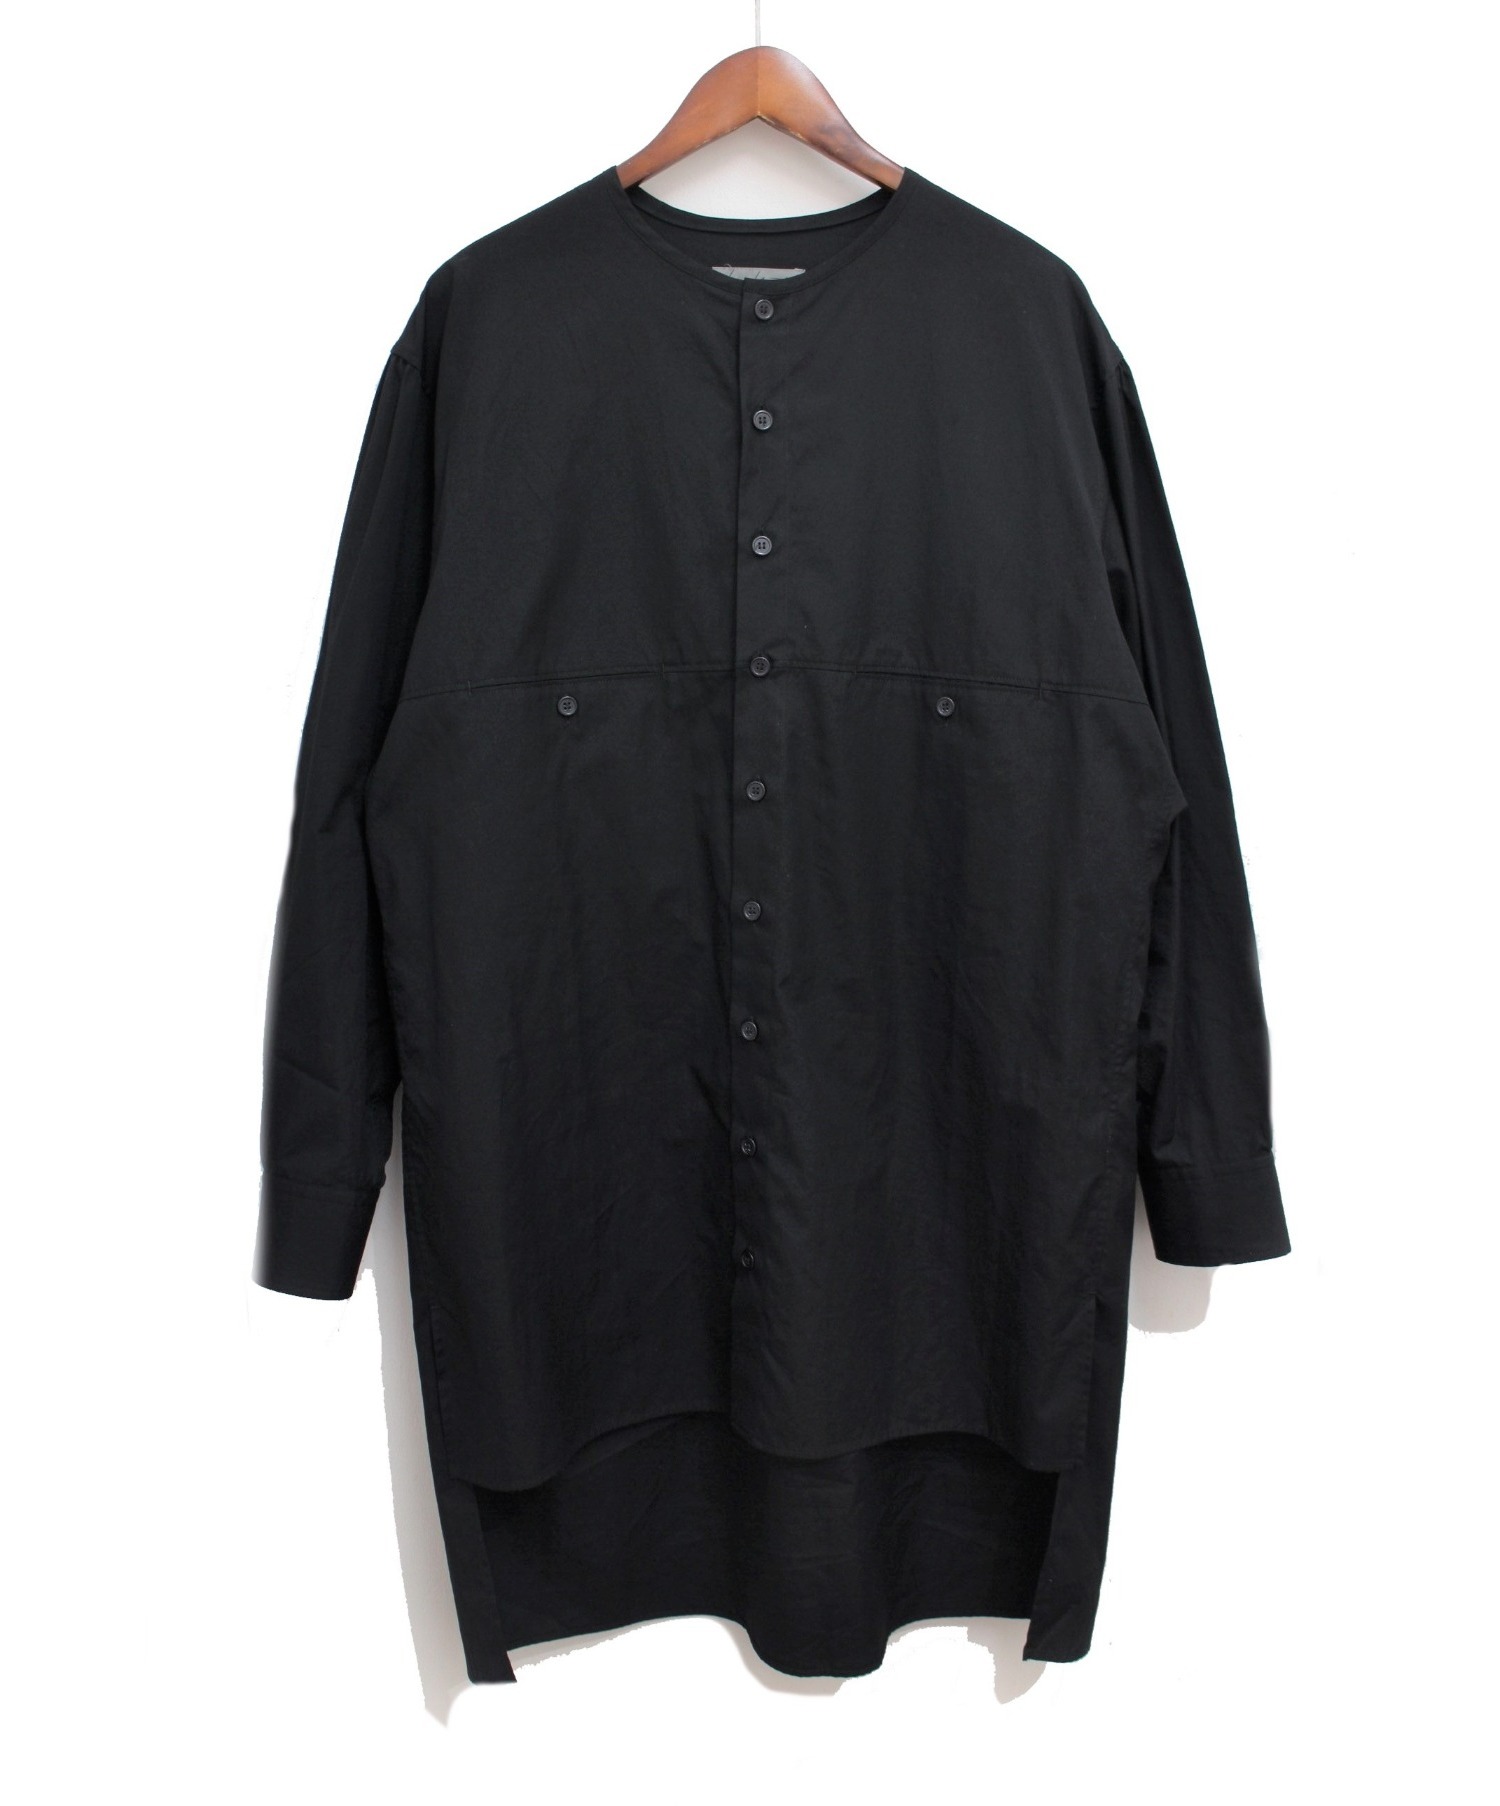 Yohji Yamamoto pour homme (ヨウジヤマモトプールオム) 20SS ヨークシャツ ブラック サイズ:2